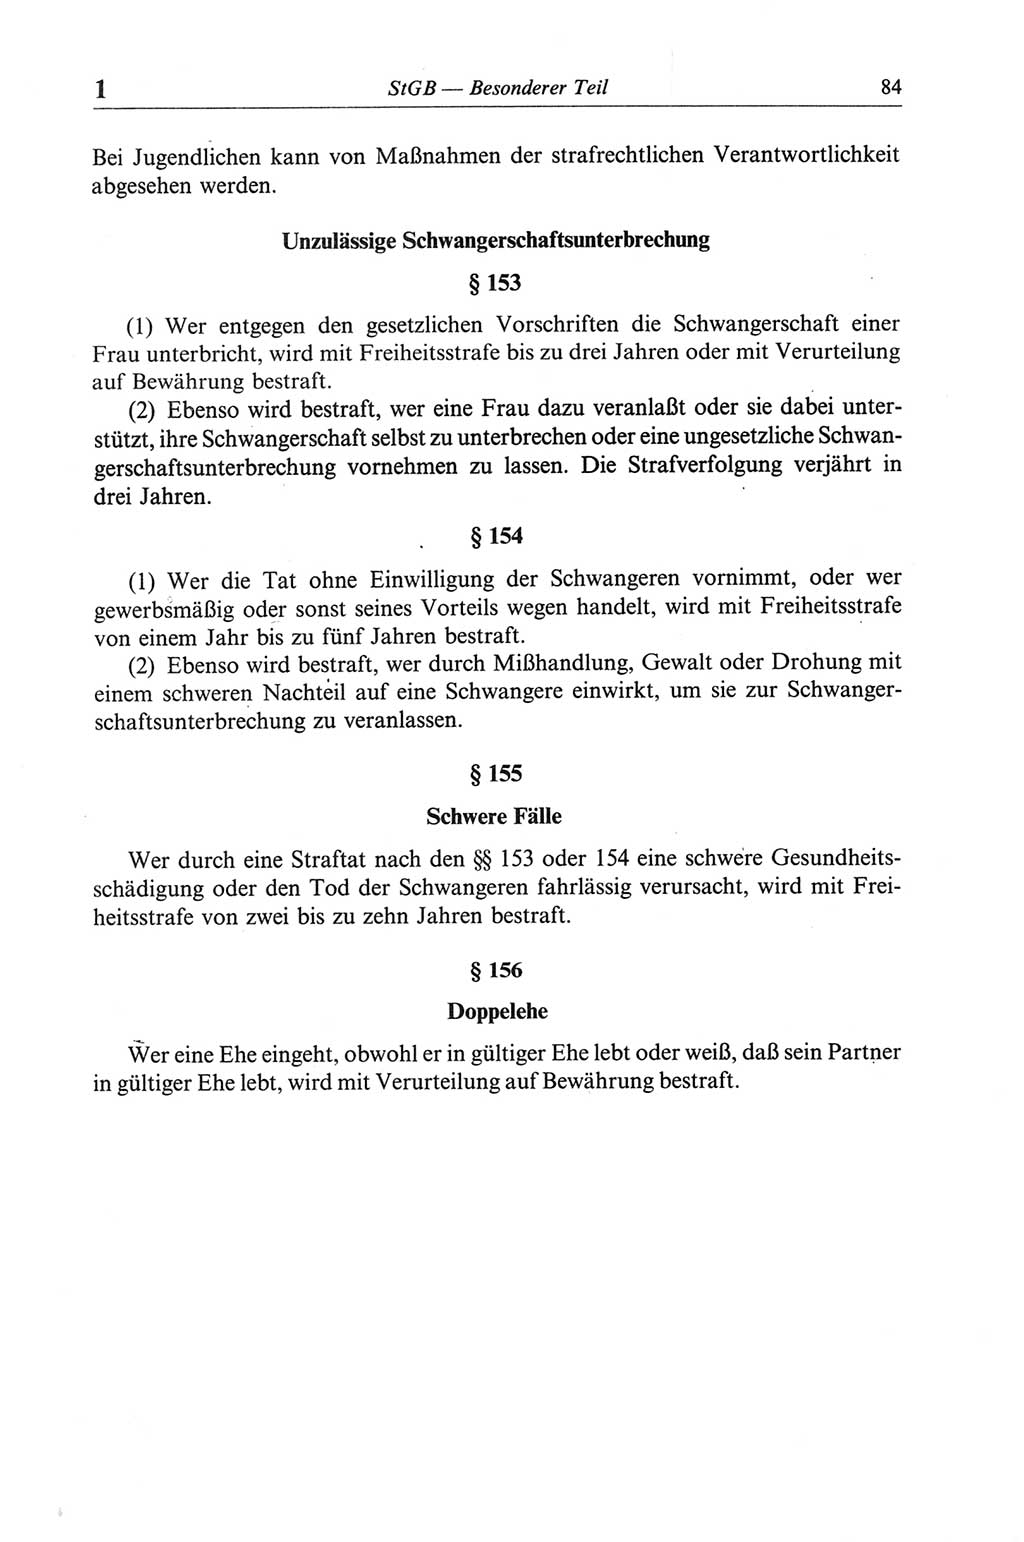 Strafgesetzbuch (StGB) der Deutschen Demokratischen Republik (DDR) und angrenzende Gesetze und Bestimmungen 1968, Seite 84 (StGB Ges. Best. DDR 1968, S. 84)